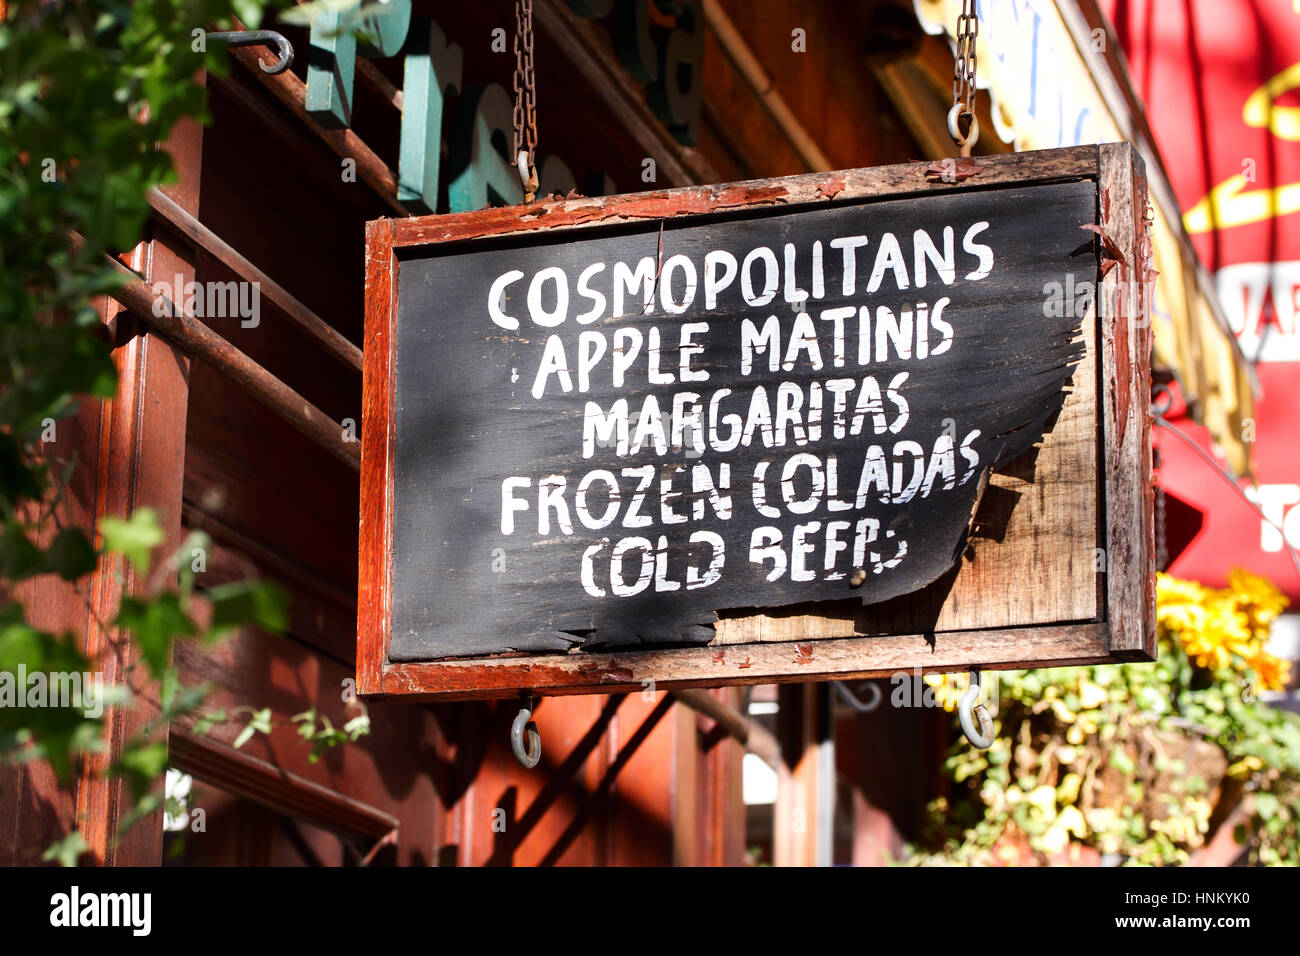 Ein Wetter getragen Zeichen über einer Bar Tür in Greenwich Village, New York, Werbung kalte erfrischende Getränke zum Verkauf Stockfoto